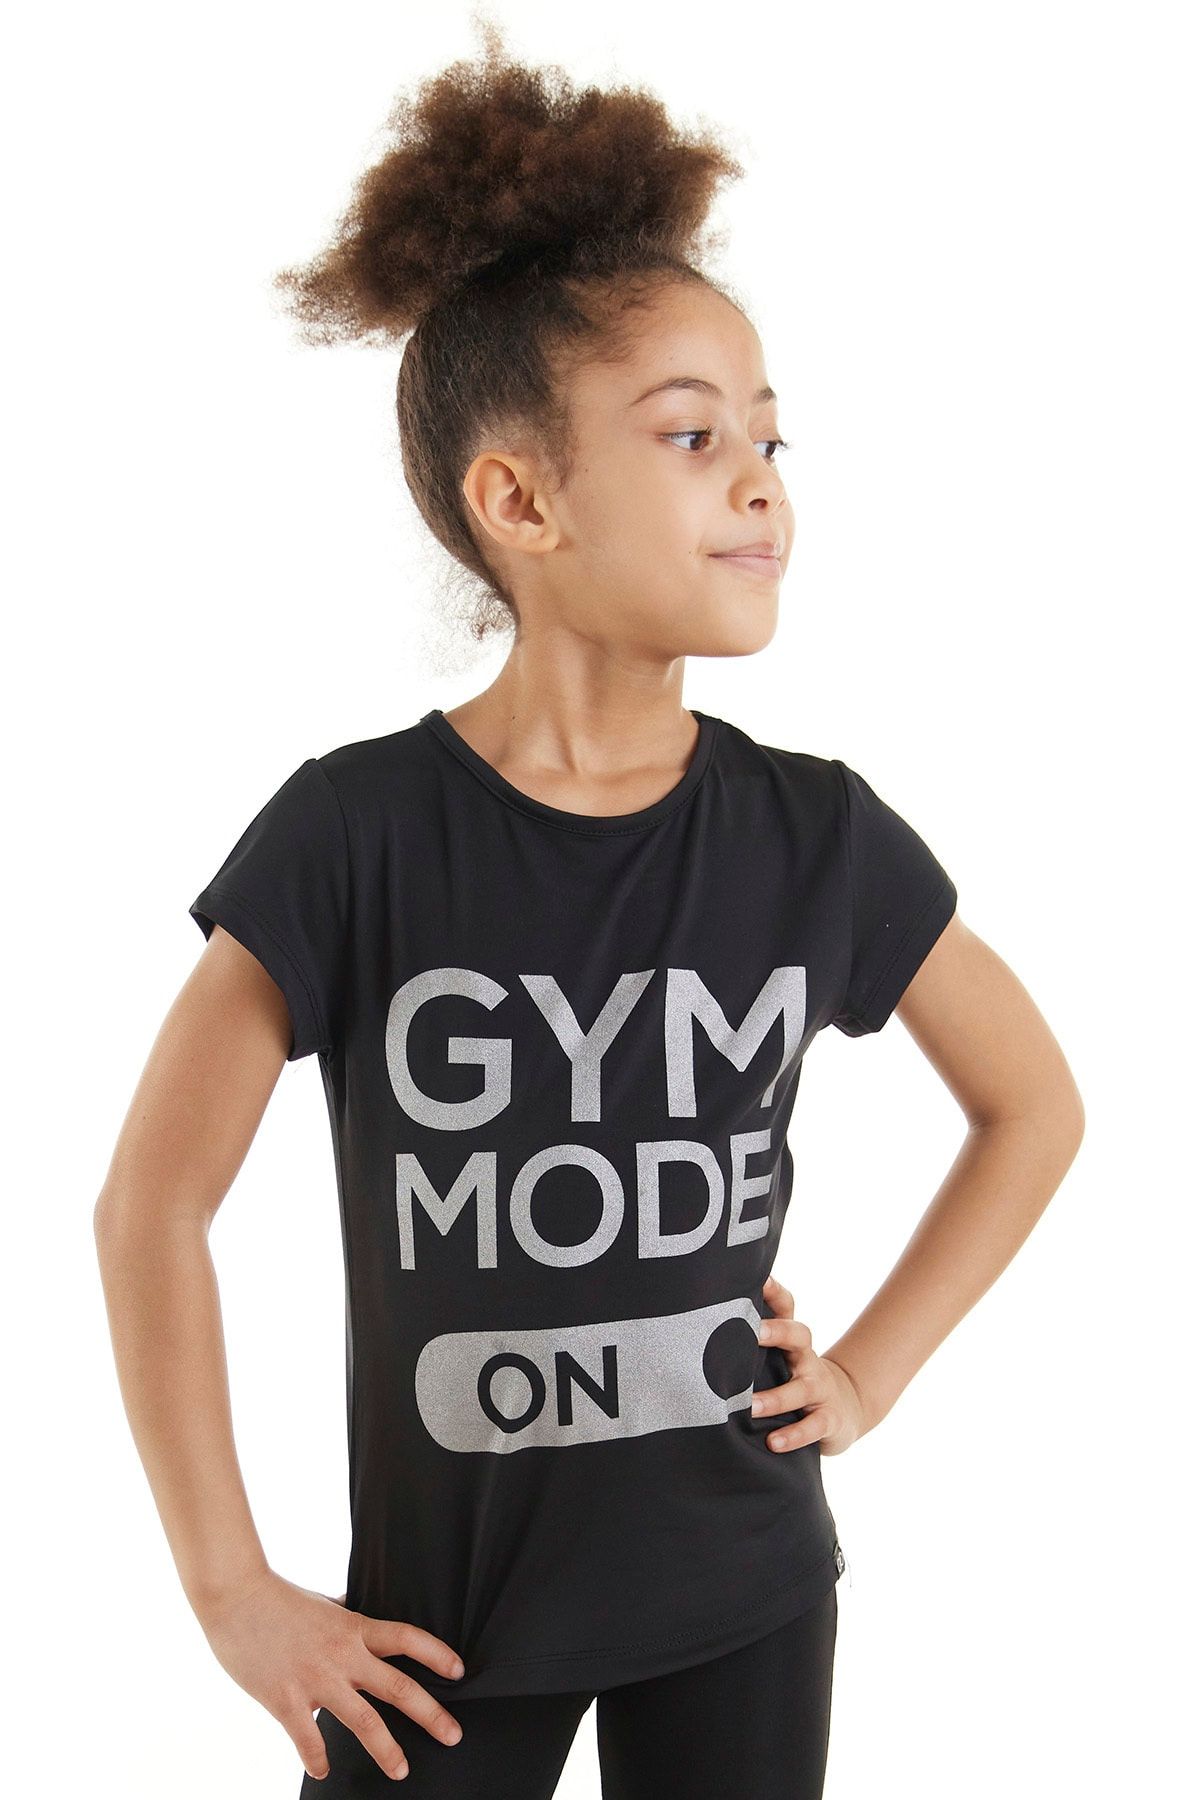 Colorinas Gym Mode On Tshirt